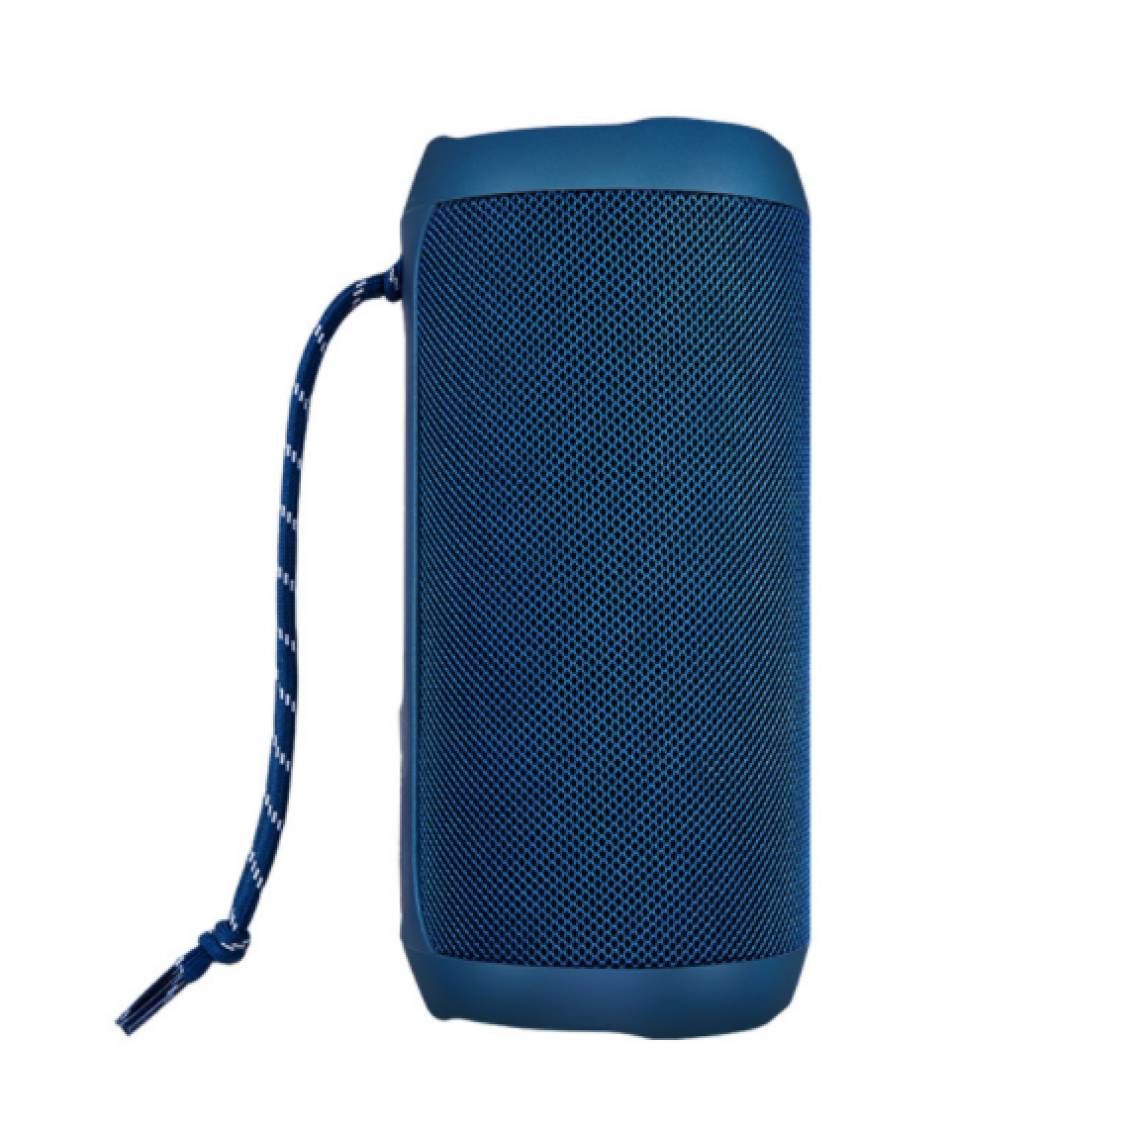 Chrono - Enceinte portable (10 W, TWS, Bluetooth 5.0, lecteur MP3 USB/microSD, radio FM)(Bleu) - Enceintes Hifi